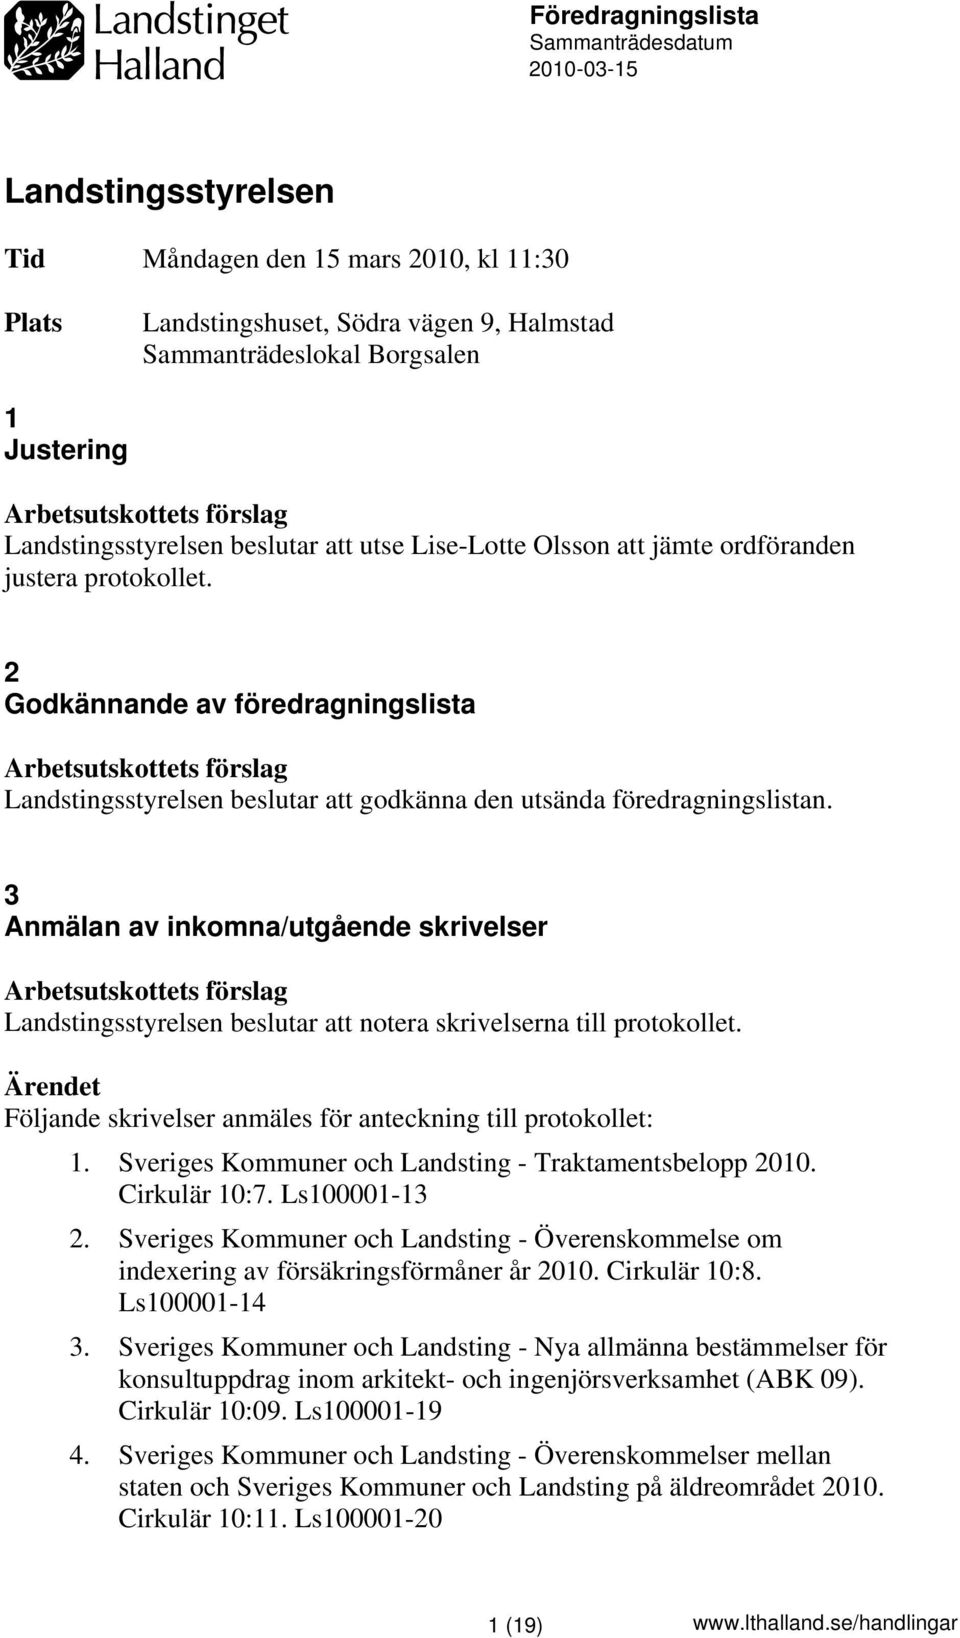 3 Anmälan av inkomna/utgående skrivelser notera skrivelserna till protokollet. Följande skrivelser anmäles för anteckning till protokollet: 1. Sveriges Kommuner och Landsting - Traktamentsbelopp 2010.